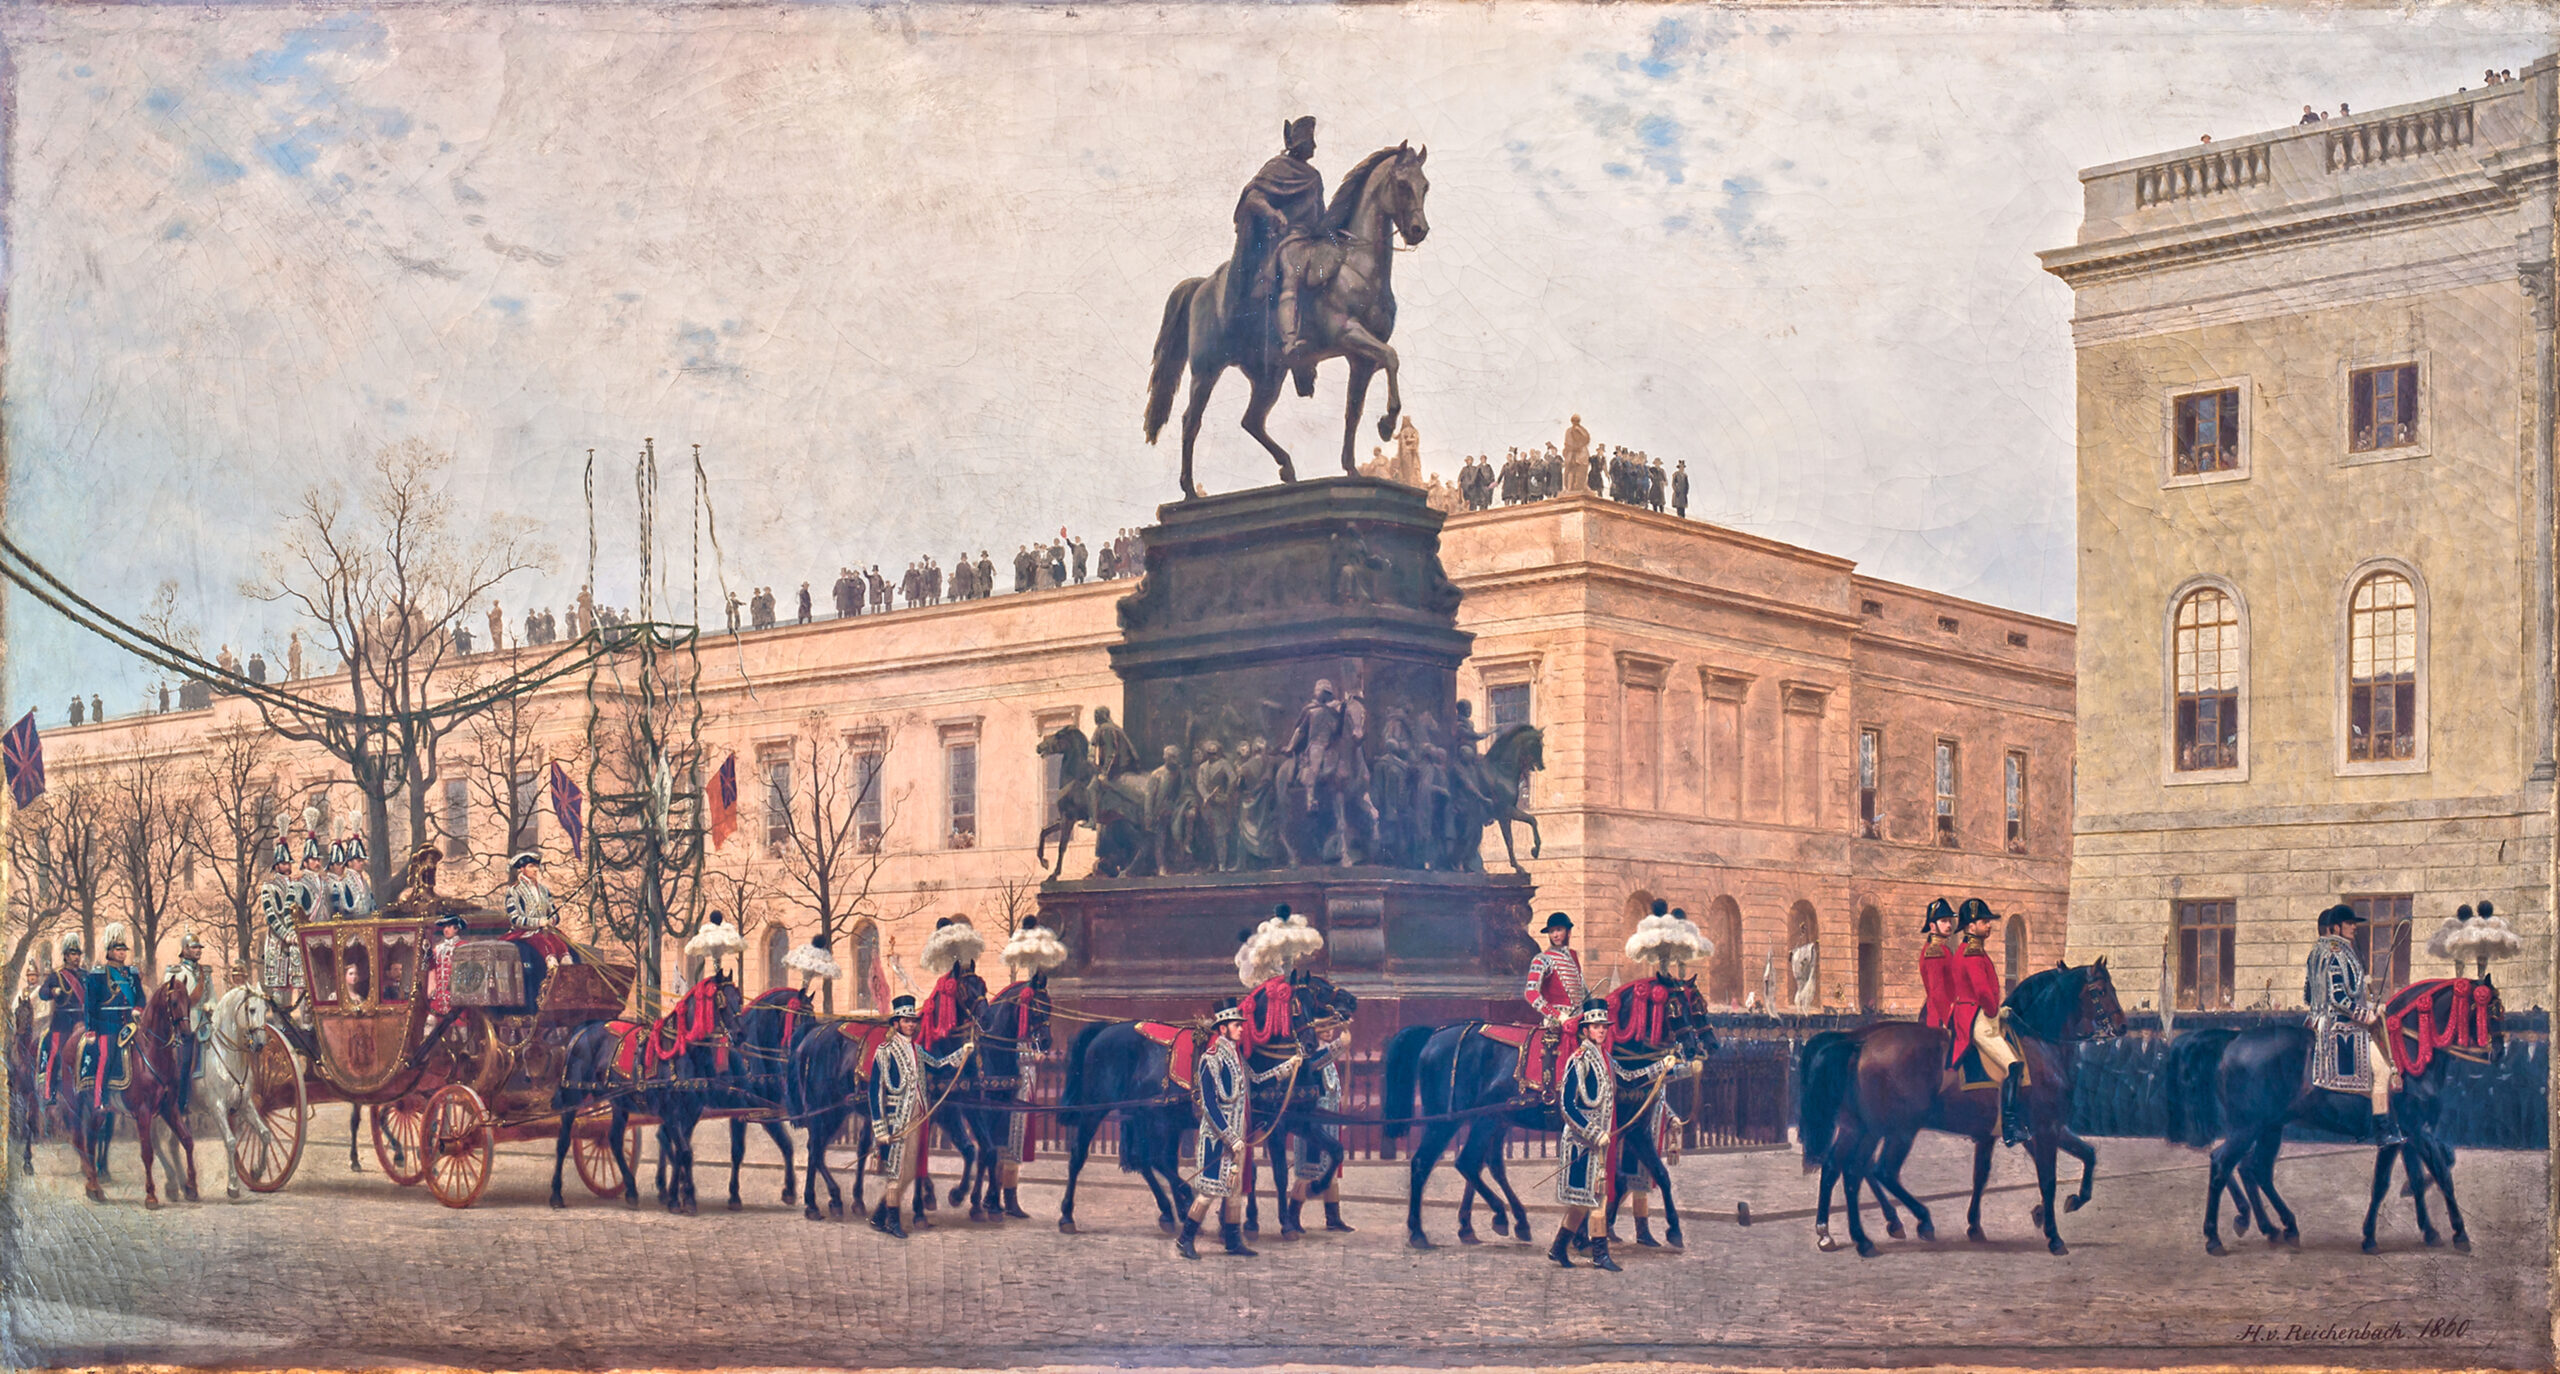 Einzug von Prinz Friedrich (III.) Wilhelm von Preußen und Victoria Princess Royal von Großbritannien und Irland 1858 in Berlin, Gemälde von Hugo von Reichenbach 1860; BHZ, Foto R. Beck